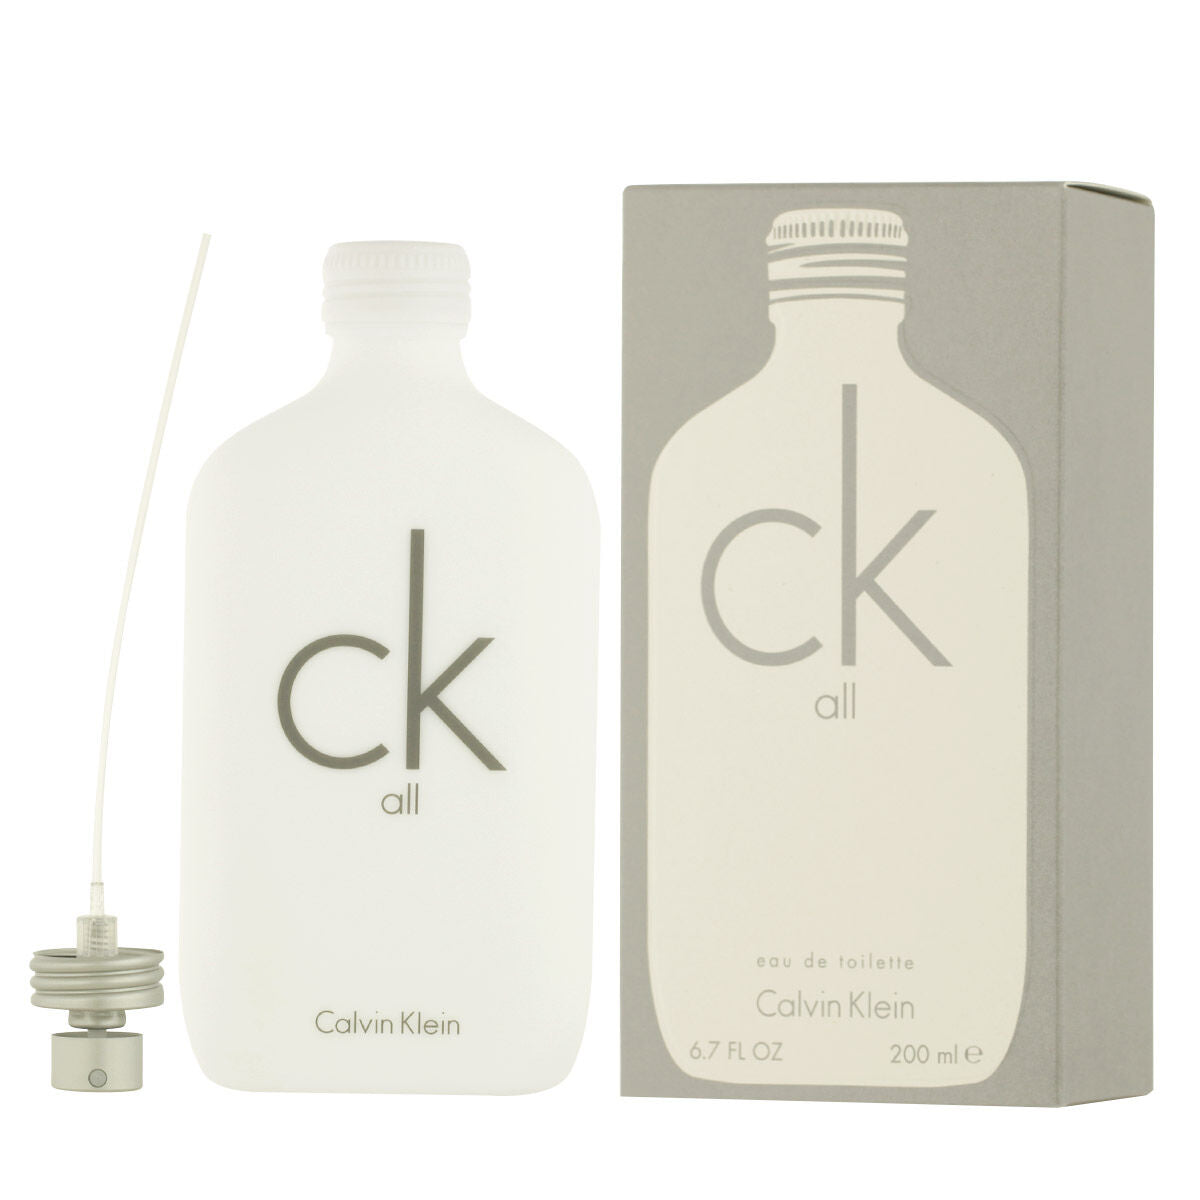 Unisex парфюм Calvin klein edt ck всички 200 ml